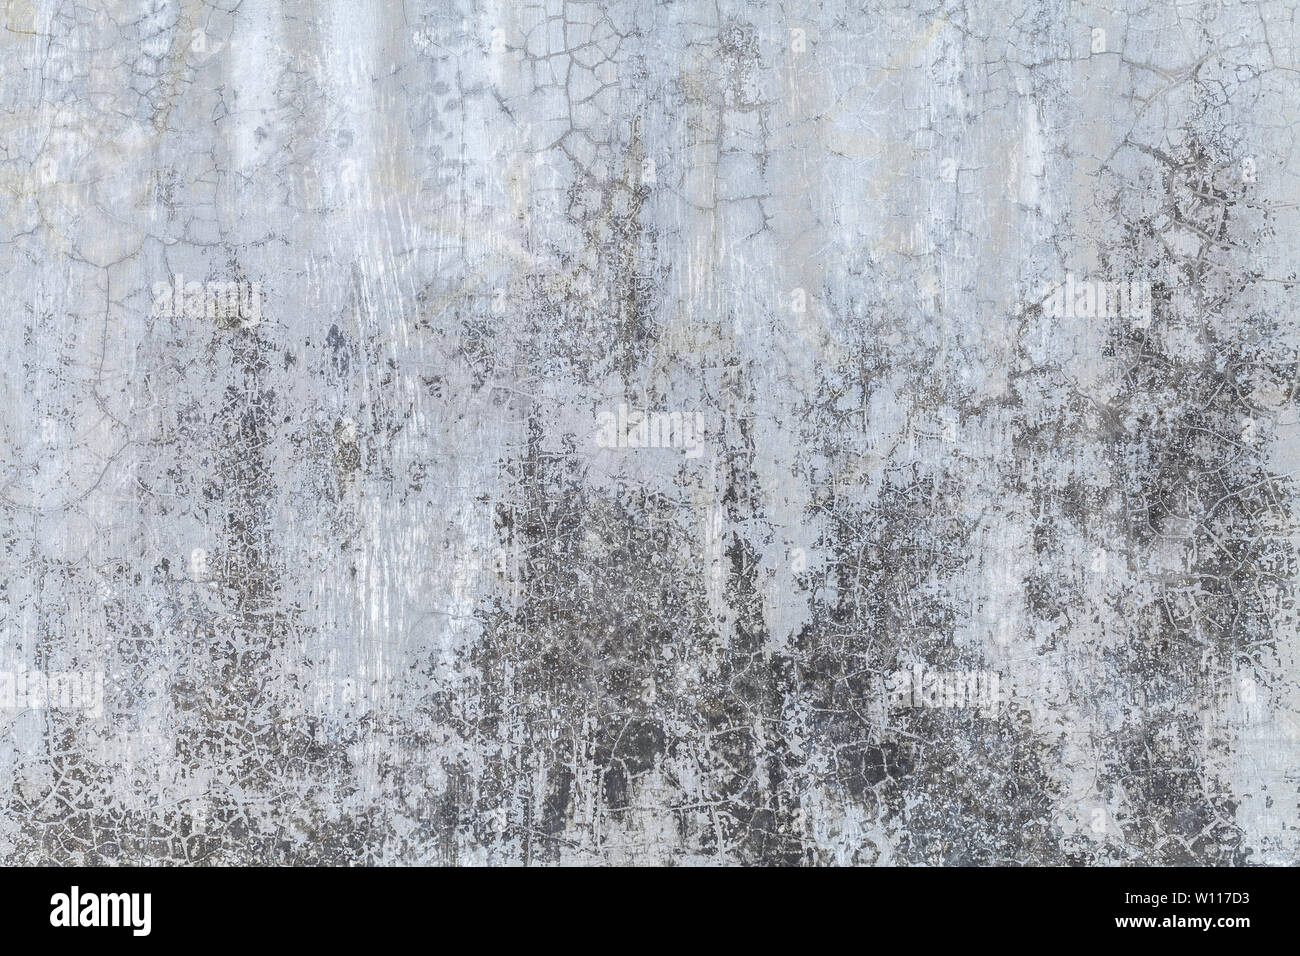 Vieux mur gris recouvert de plâtre. inégale minable La texture de surface de la pierre fendue d'argent vintage, libre. Banque D'Images